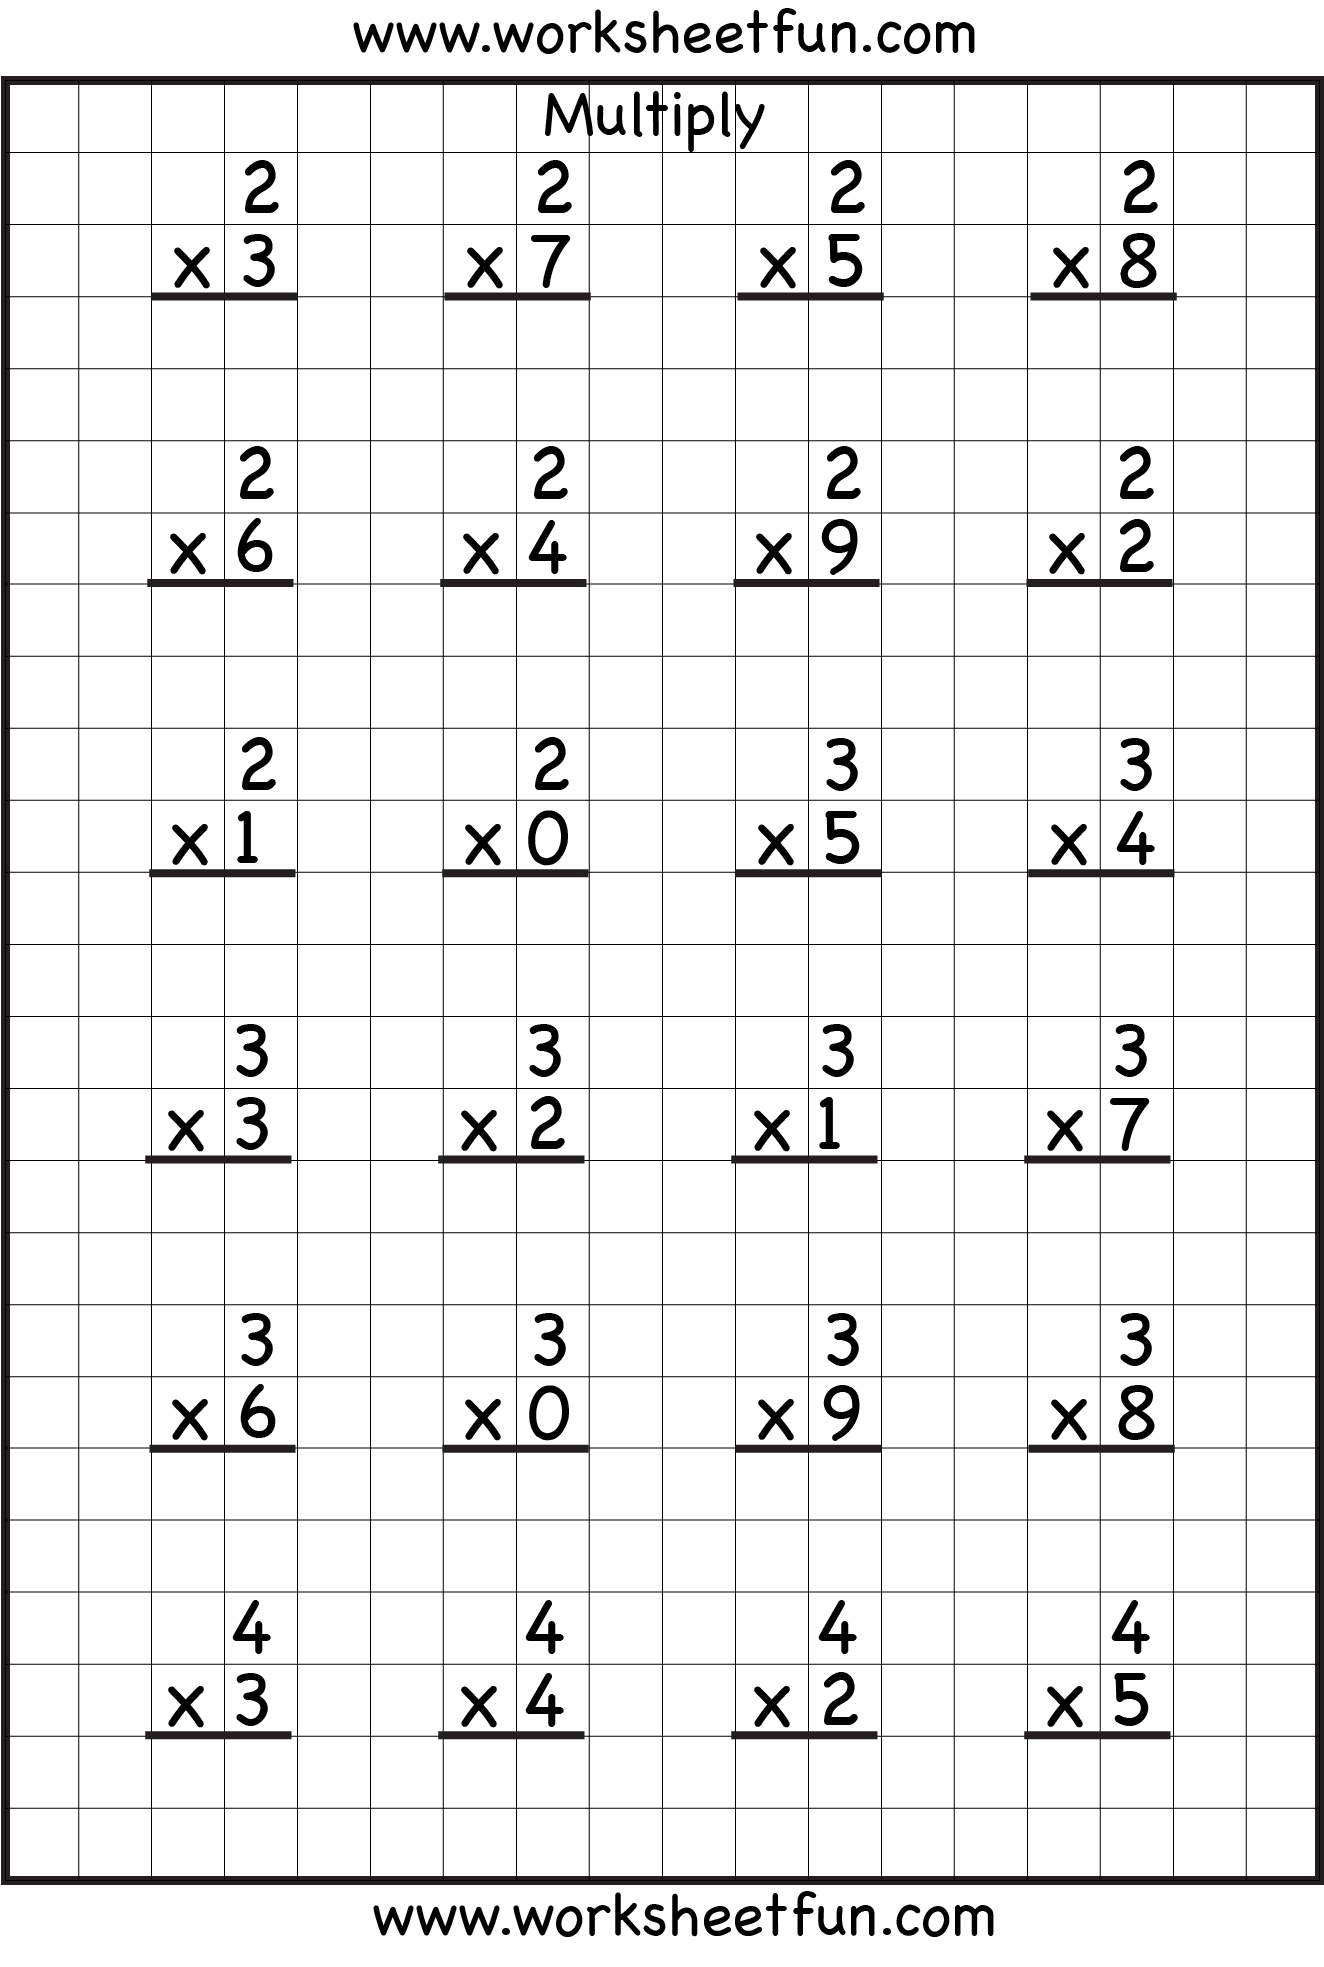 single-digit-multiplication-8-worksheets-free-printable-worksheets-worksheetfun